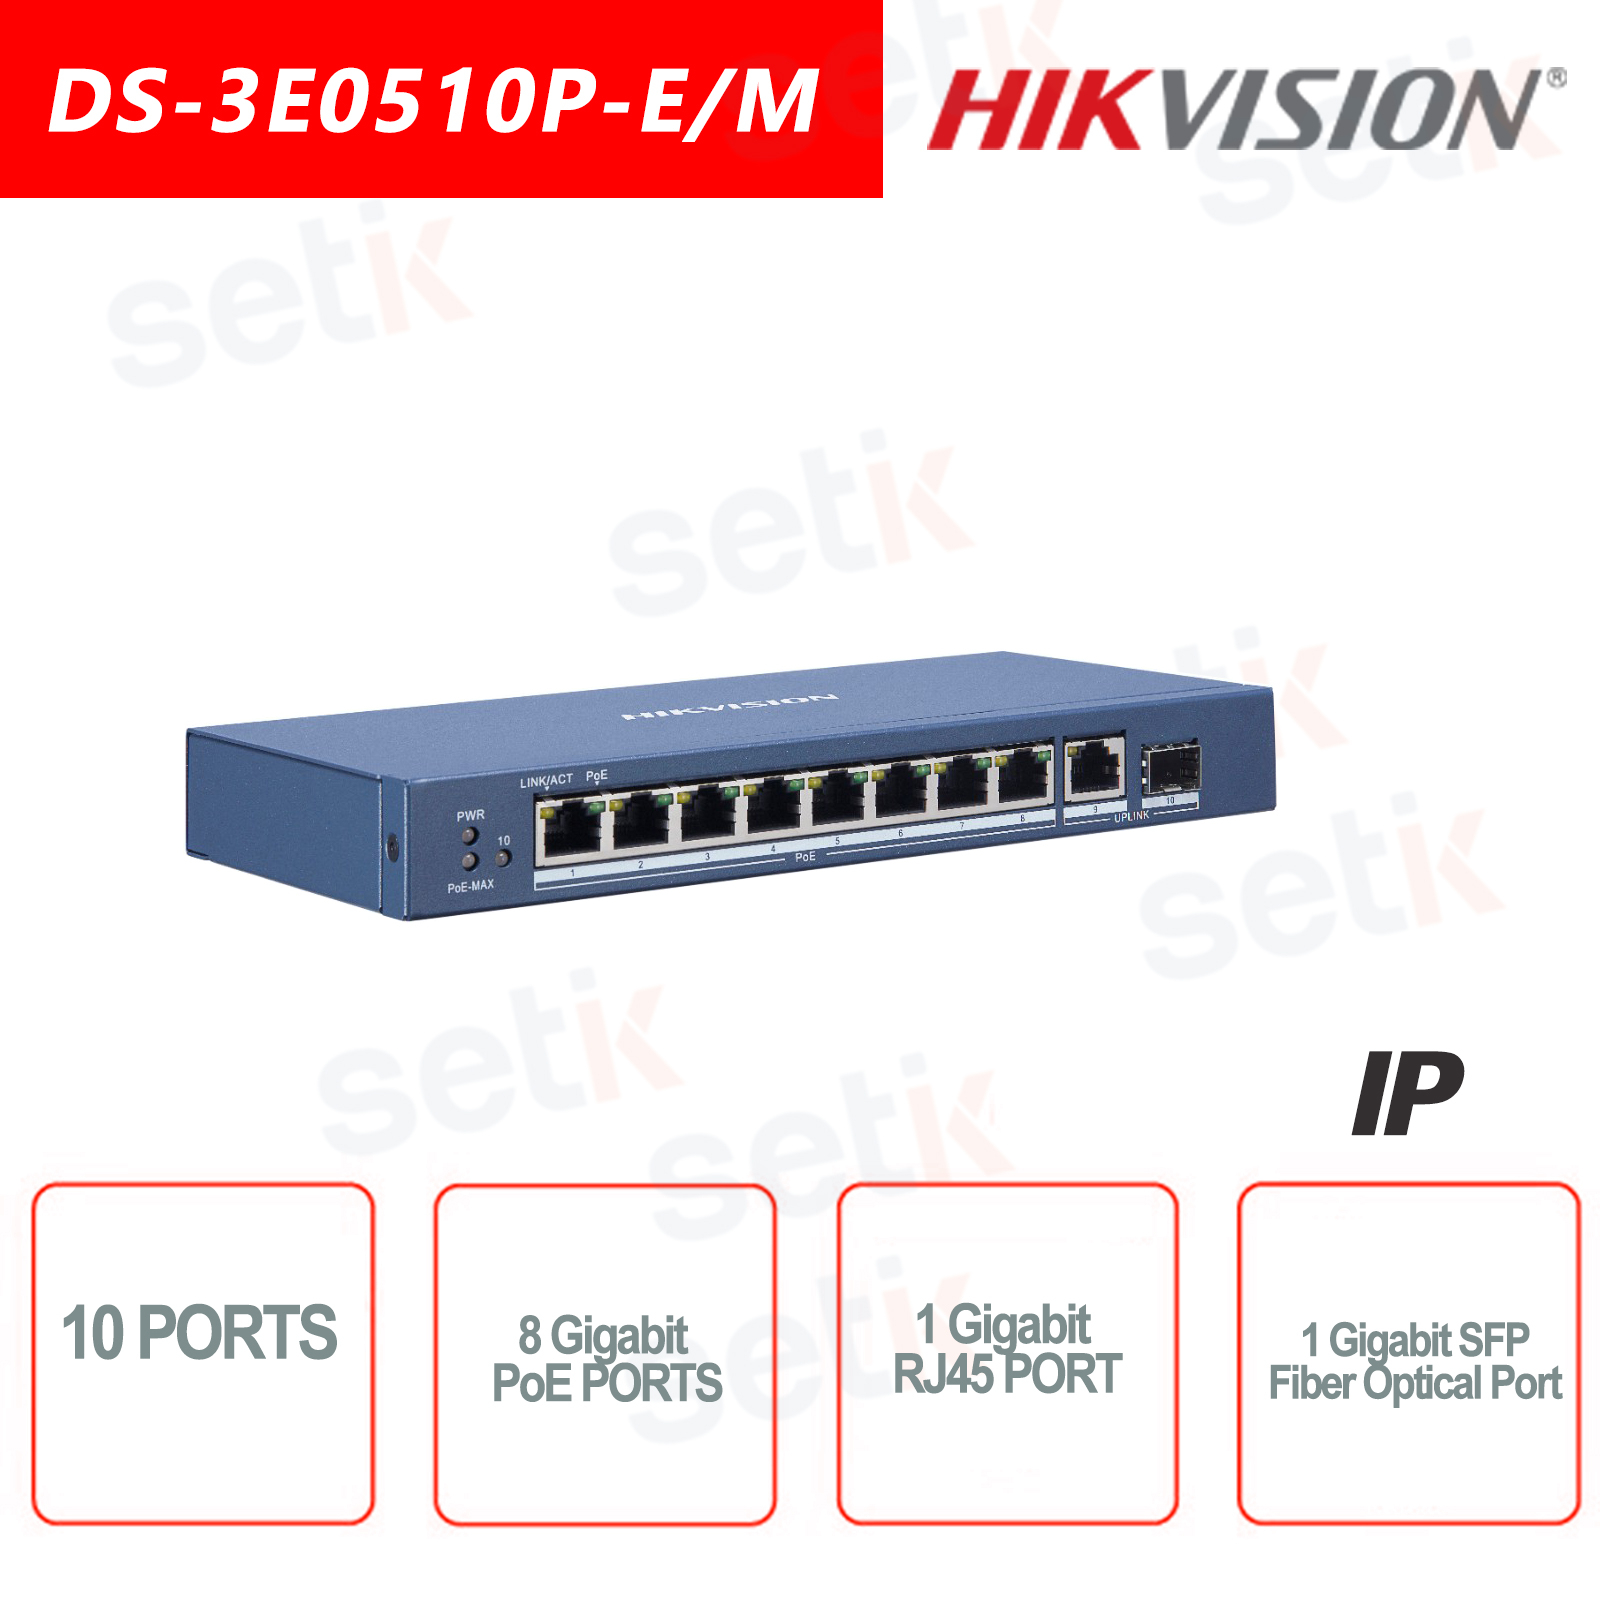 DS-3E3730 - Commutateur réseau - 24 ports Gigabit et 6 ports optiques 10  Gigabit 